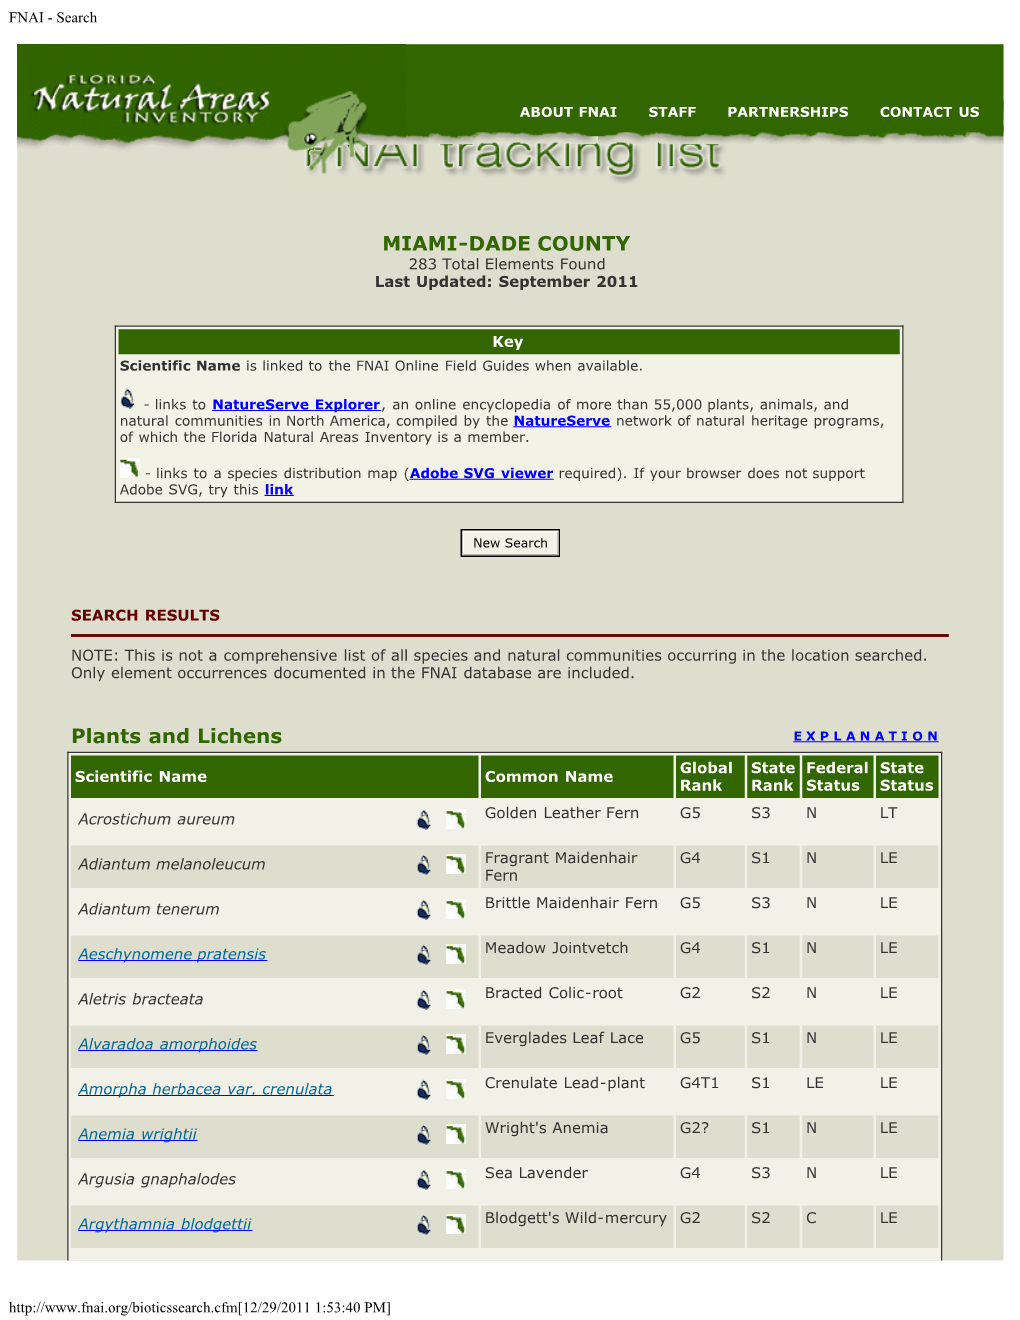 FNAI (Florida Natural Areas Inventory). 2011. FNAI Tracking List